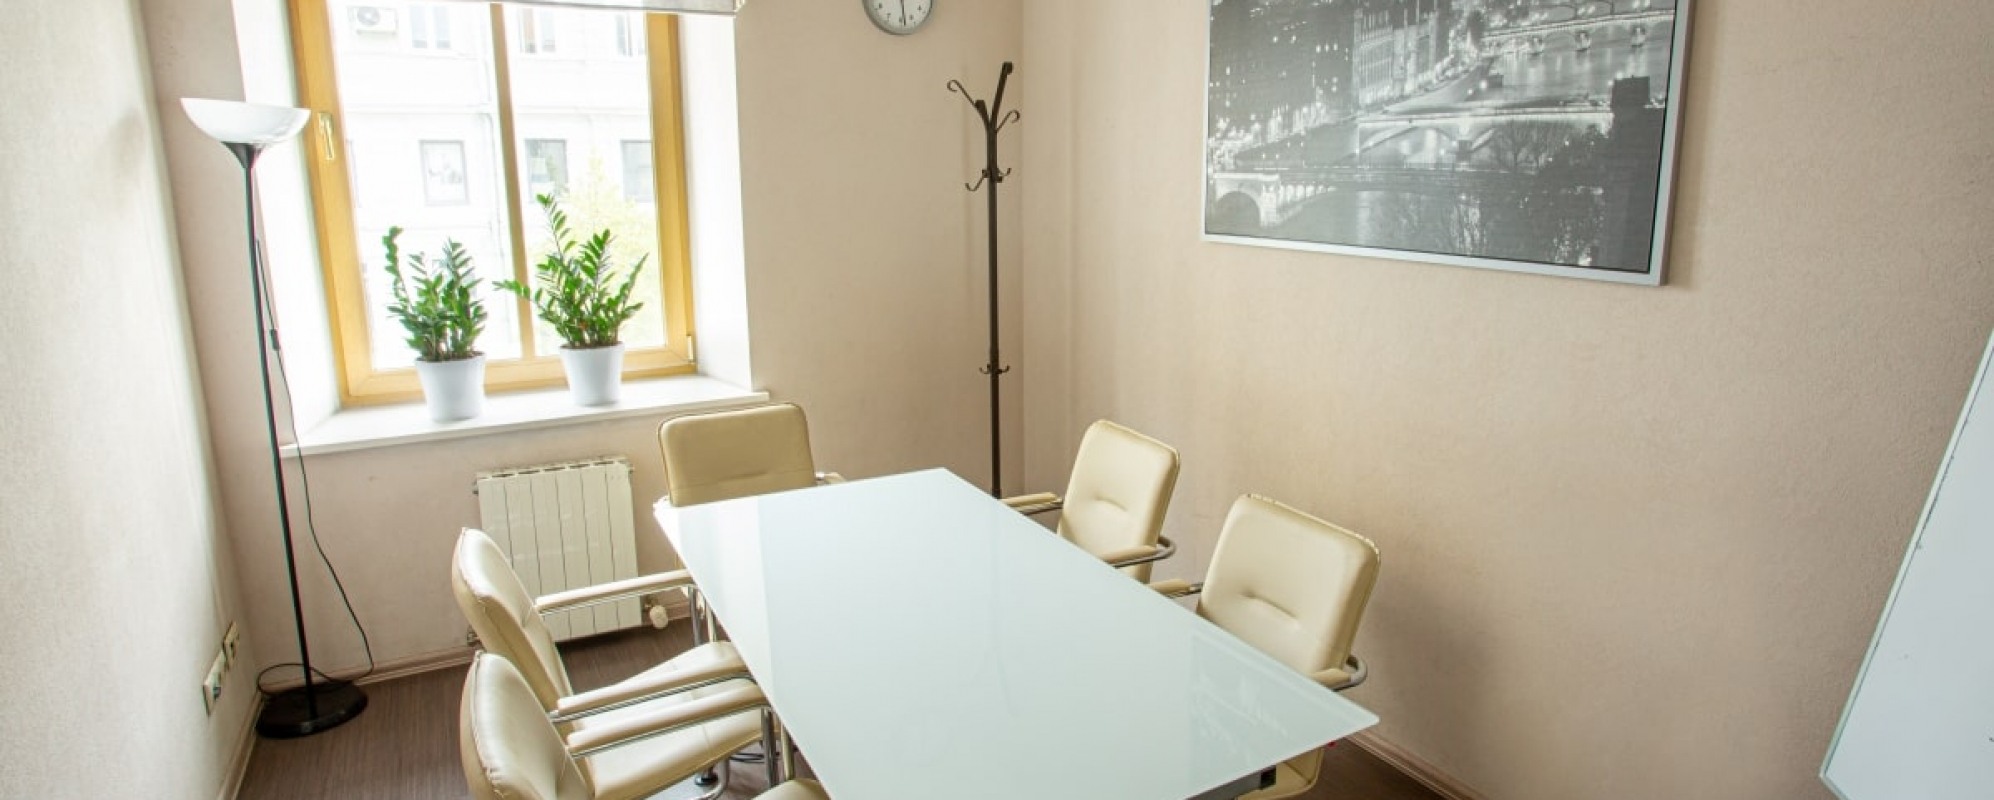 Фотографии комнаты для переговоров MeettRoom Зал Париж